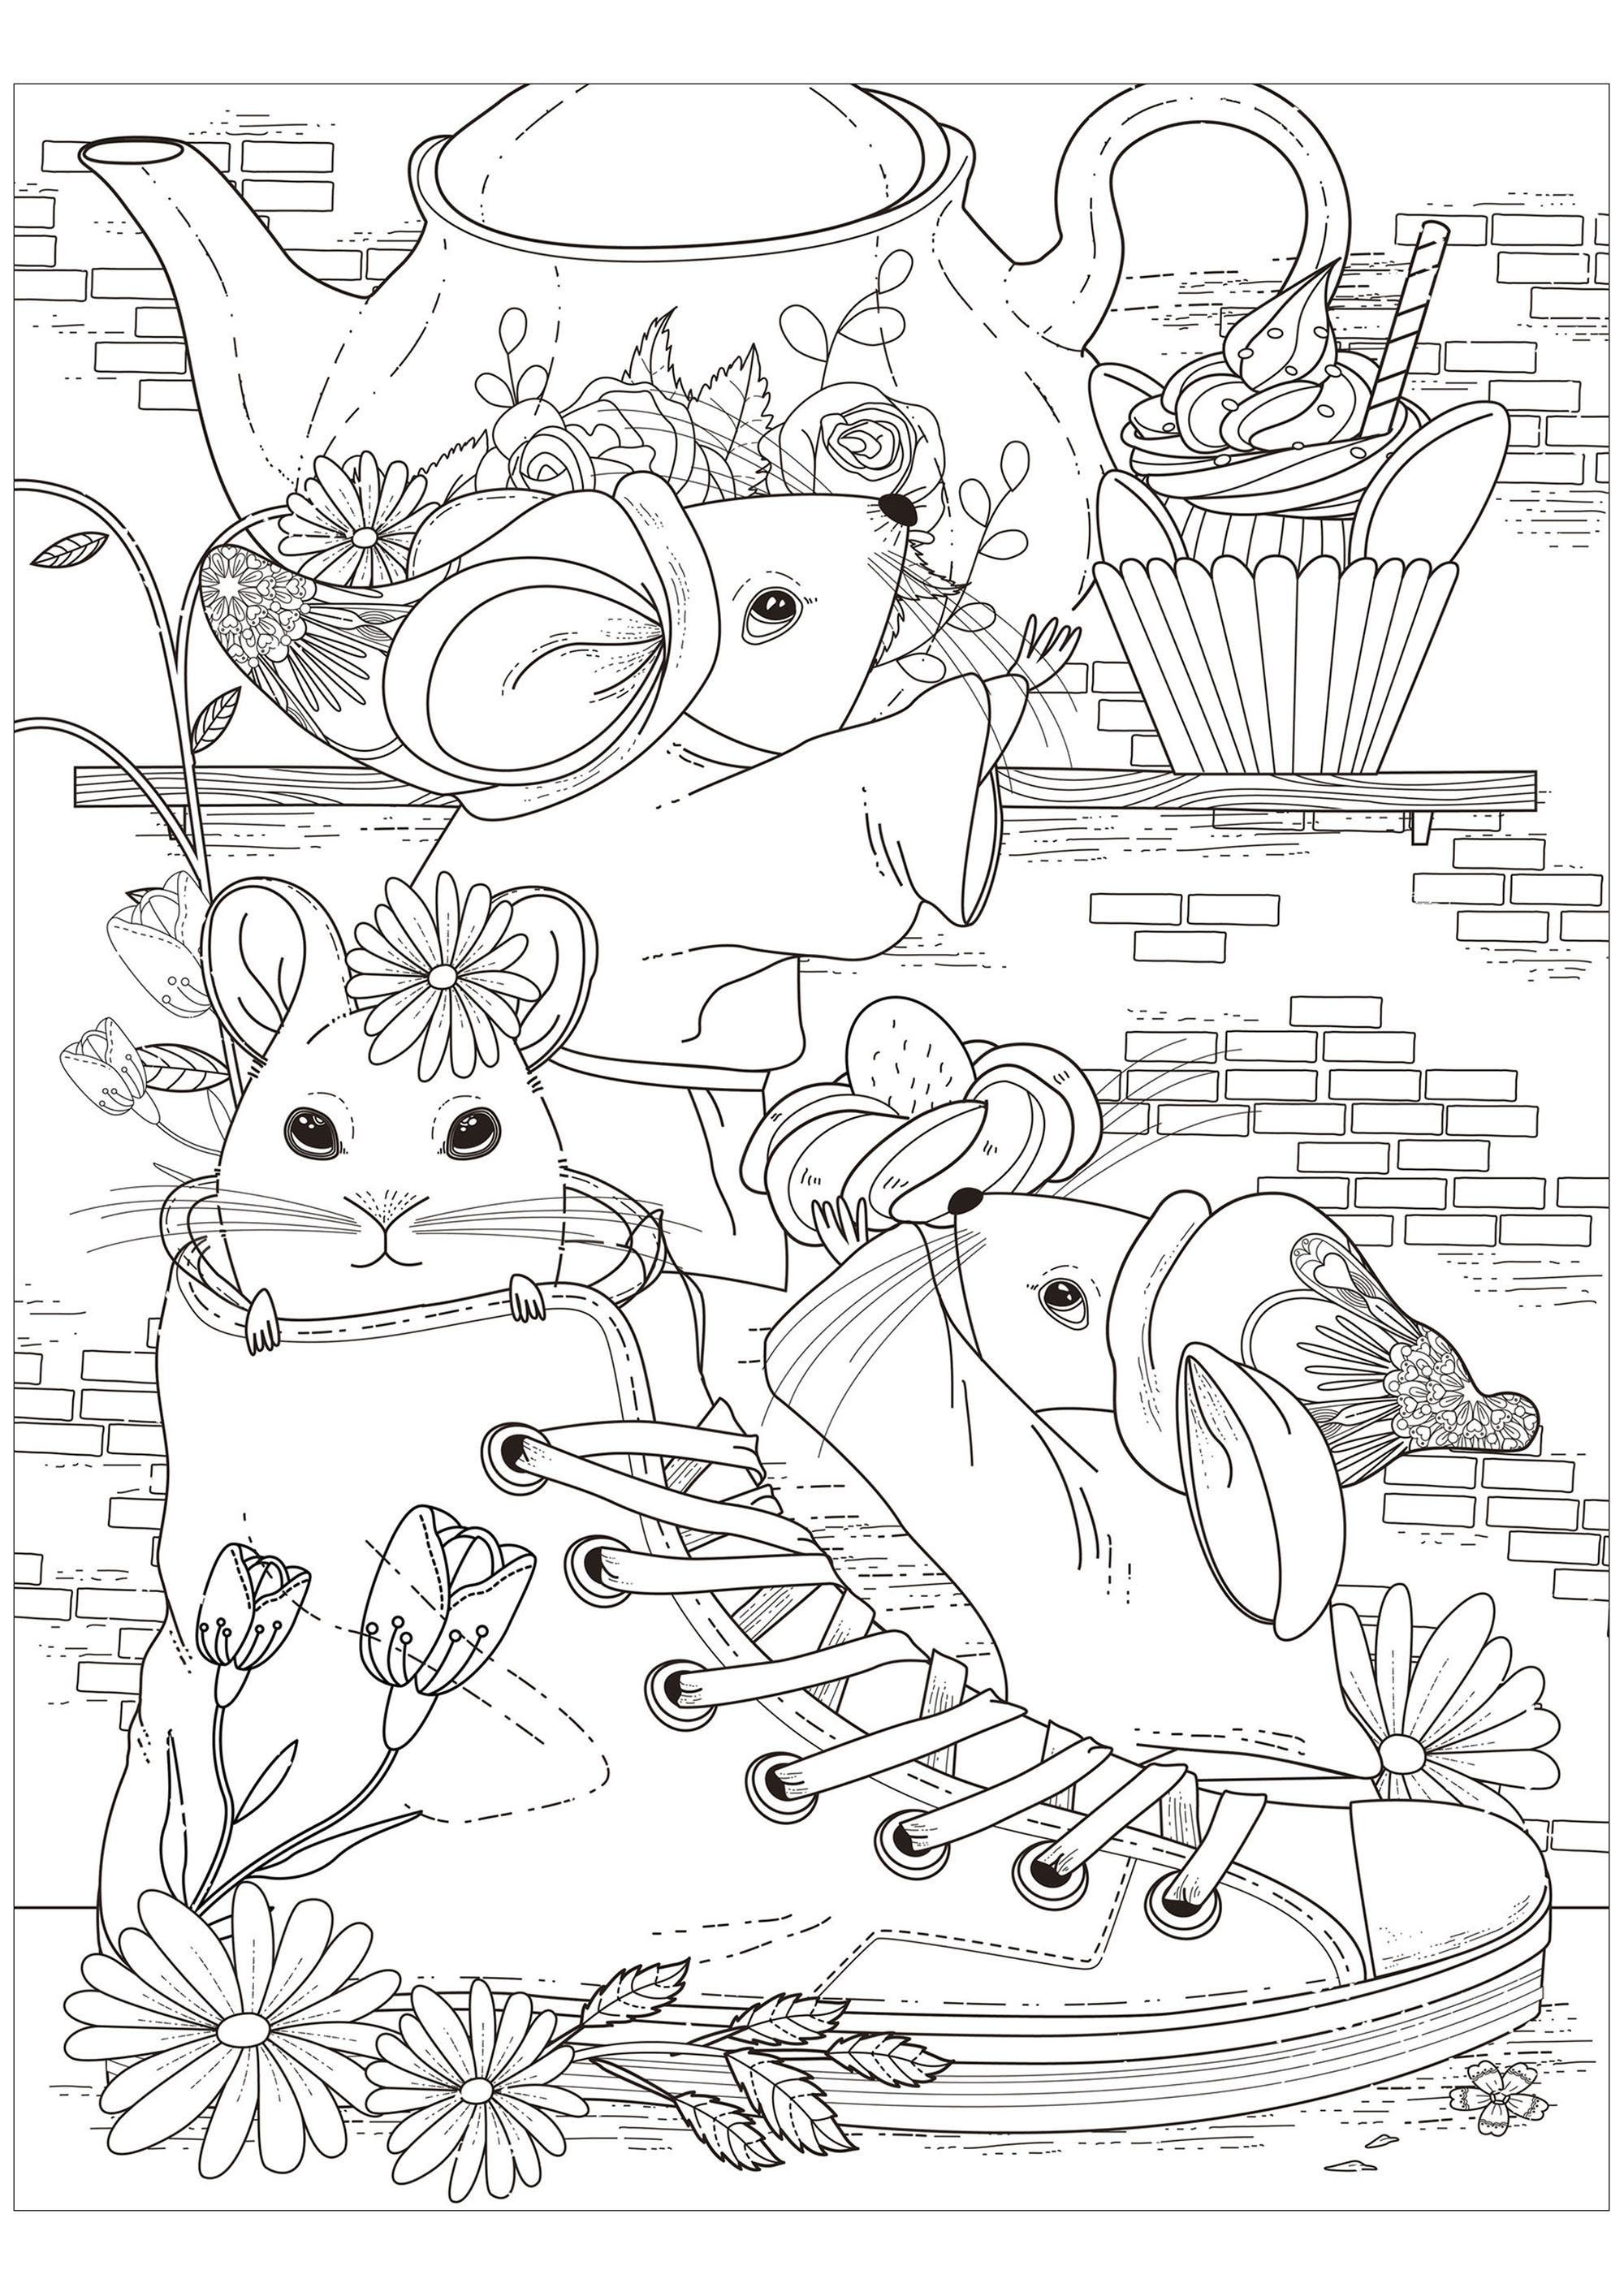 Ausmalbild von drei Mäusen beim Tee mit einer von ihnen in einem Schuh, Quelle : 123rf   Künstler : Kchung